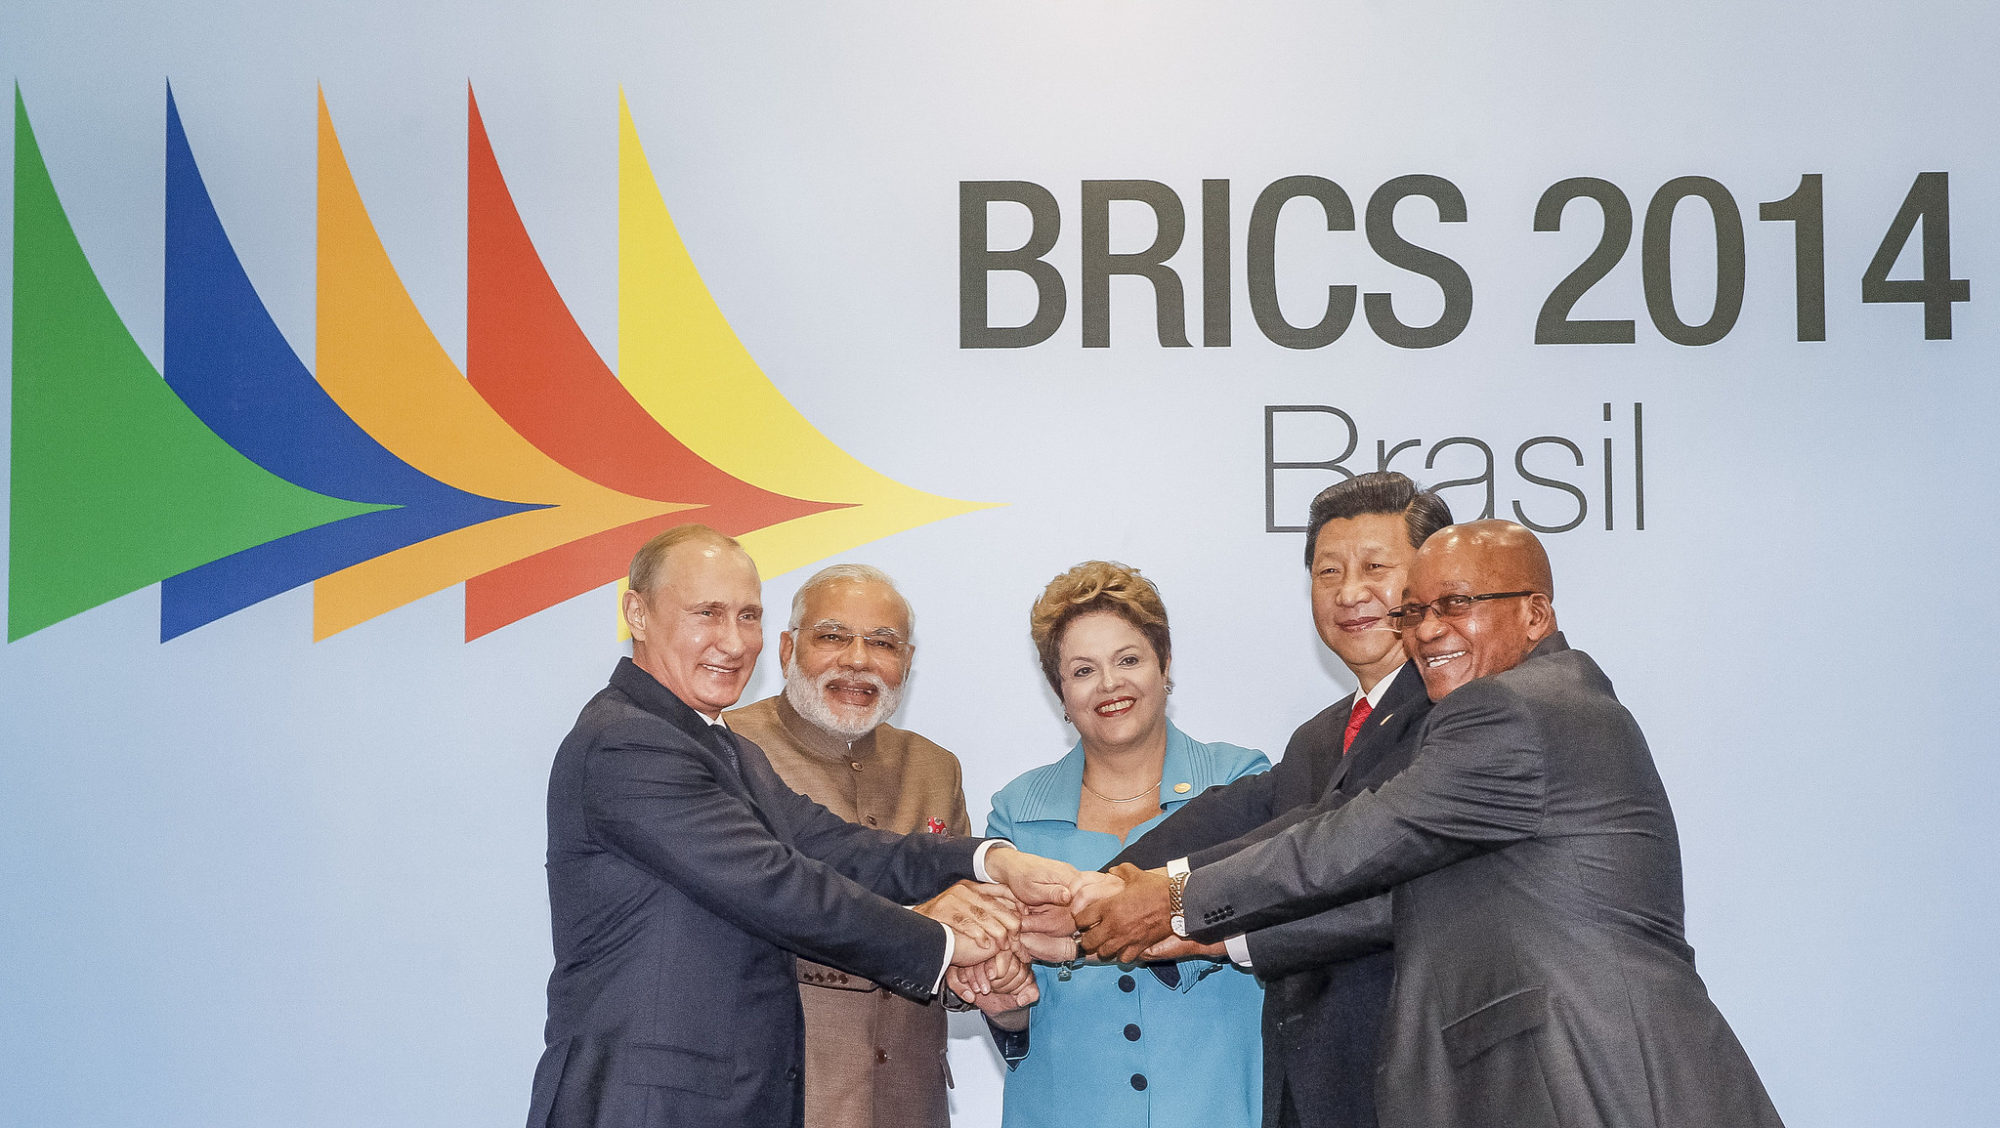 BRICS leaders pose at the 2014 summit.